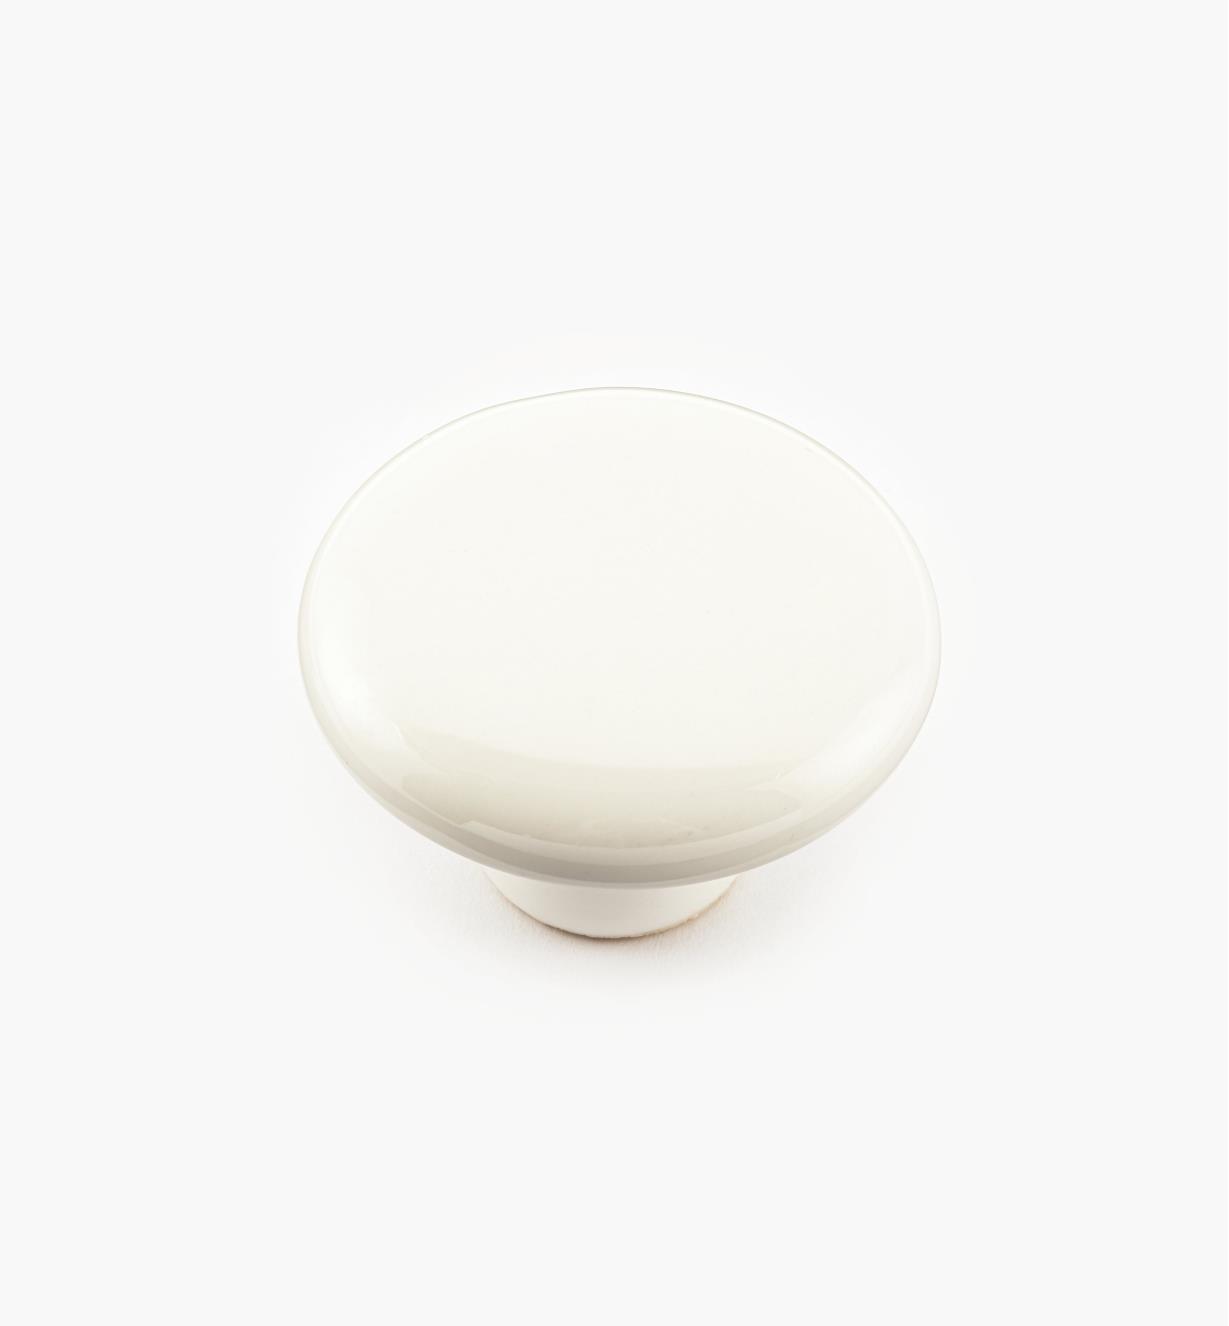 00W2804 - Bouton en céramique, blanc, 1 1/2 po x 1 po